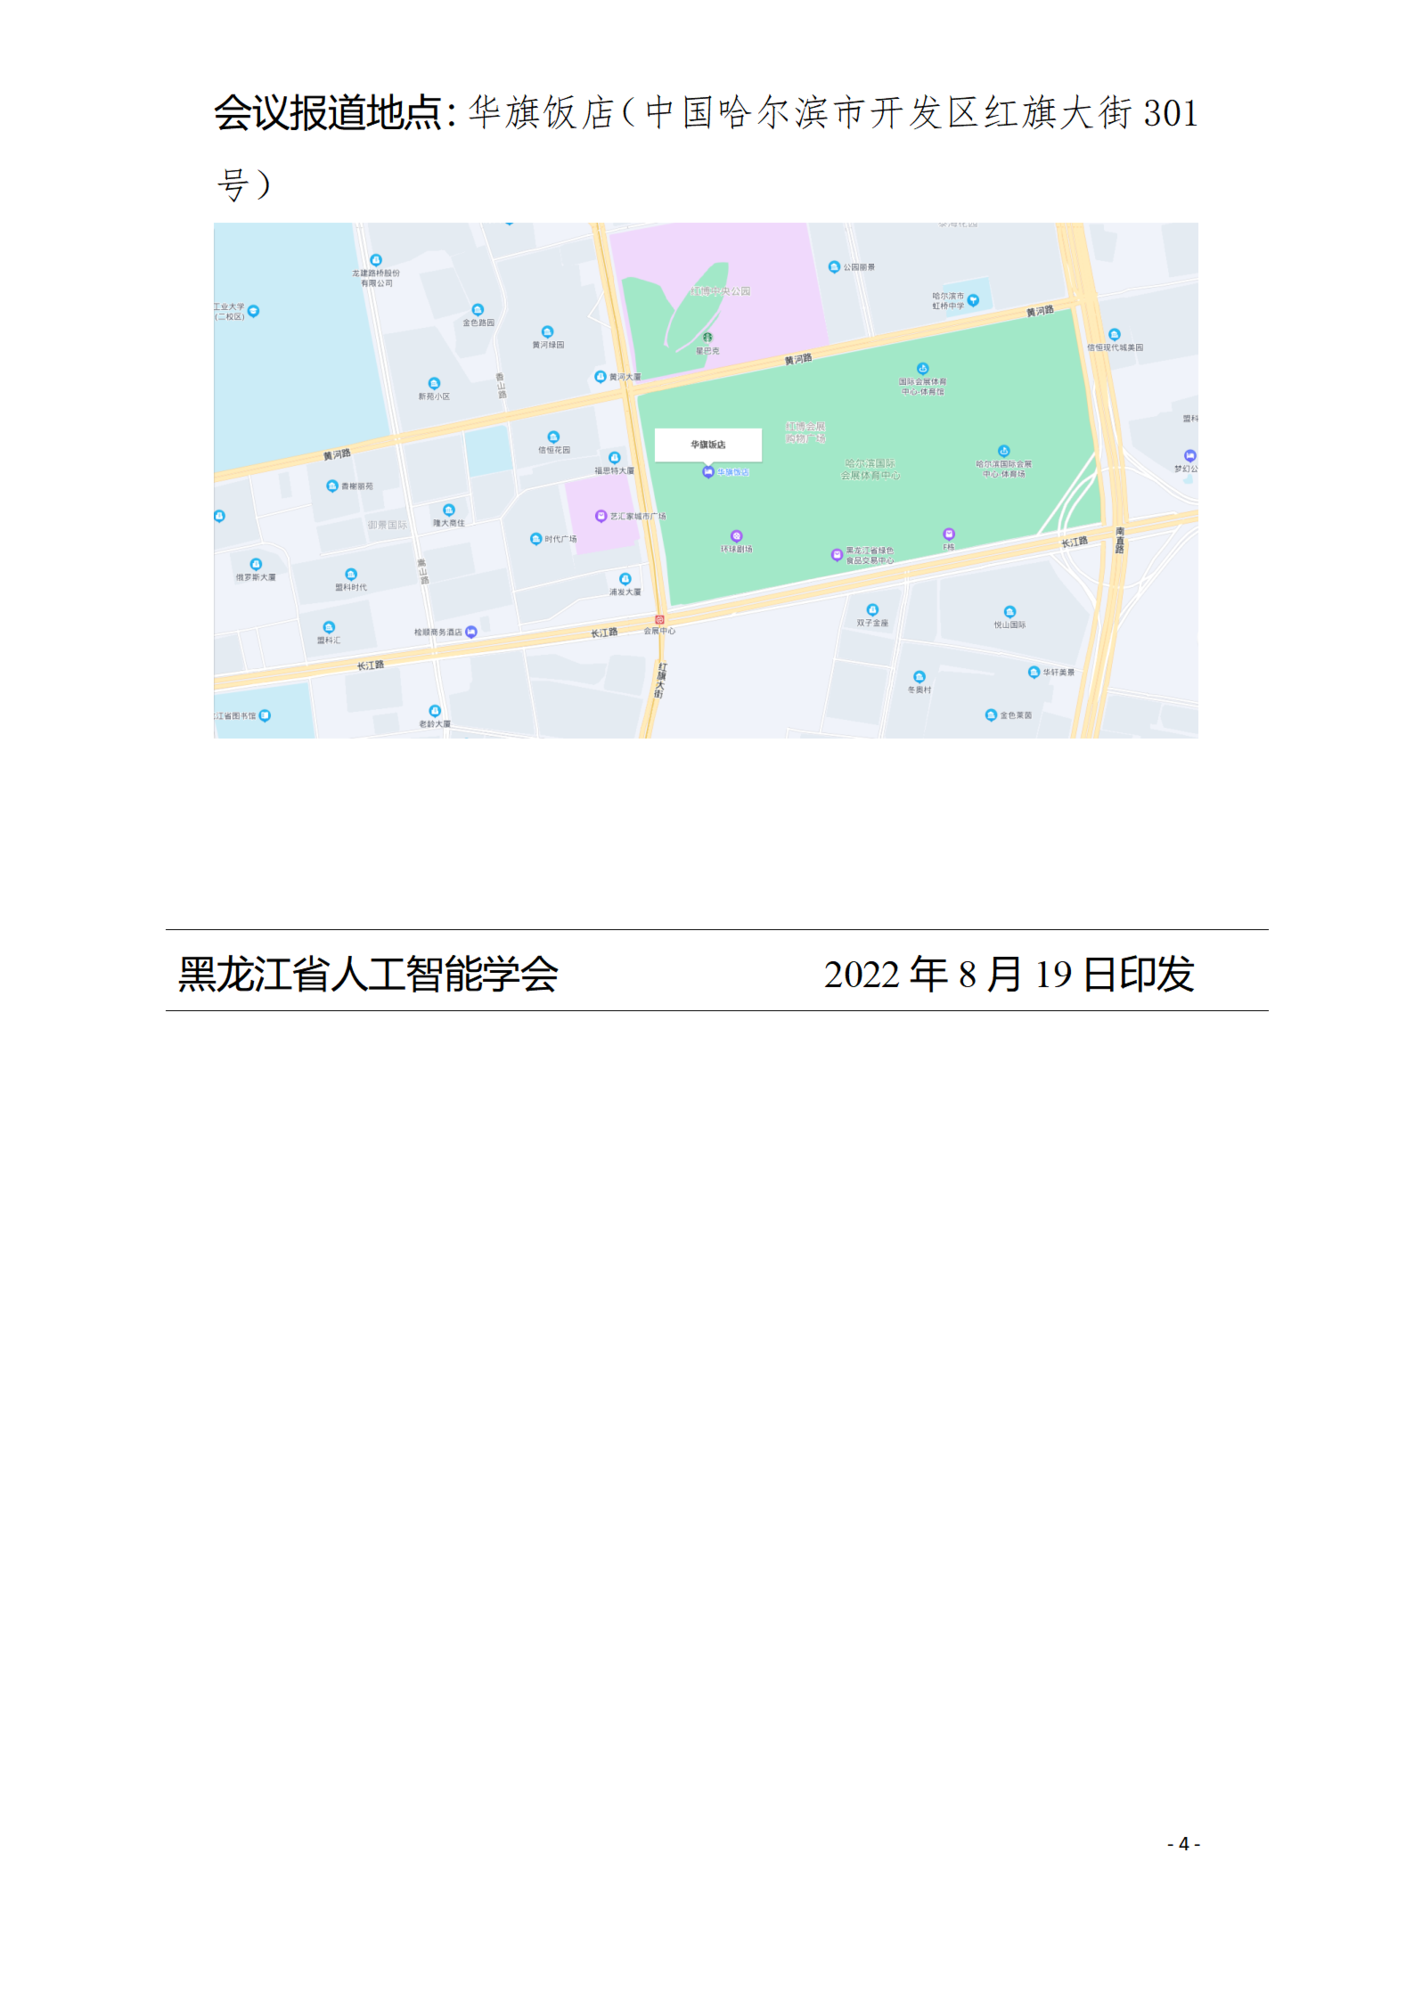 2022年黑龙江省人工智能学会年会通知_04.png